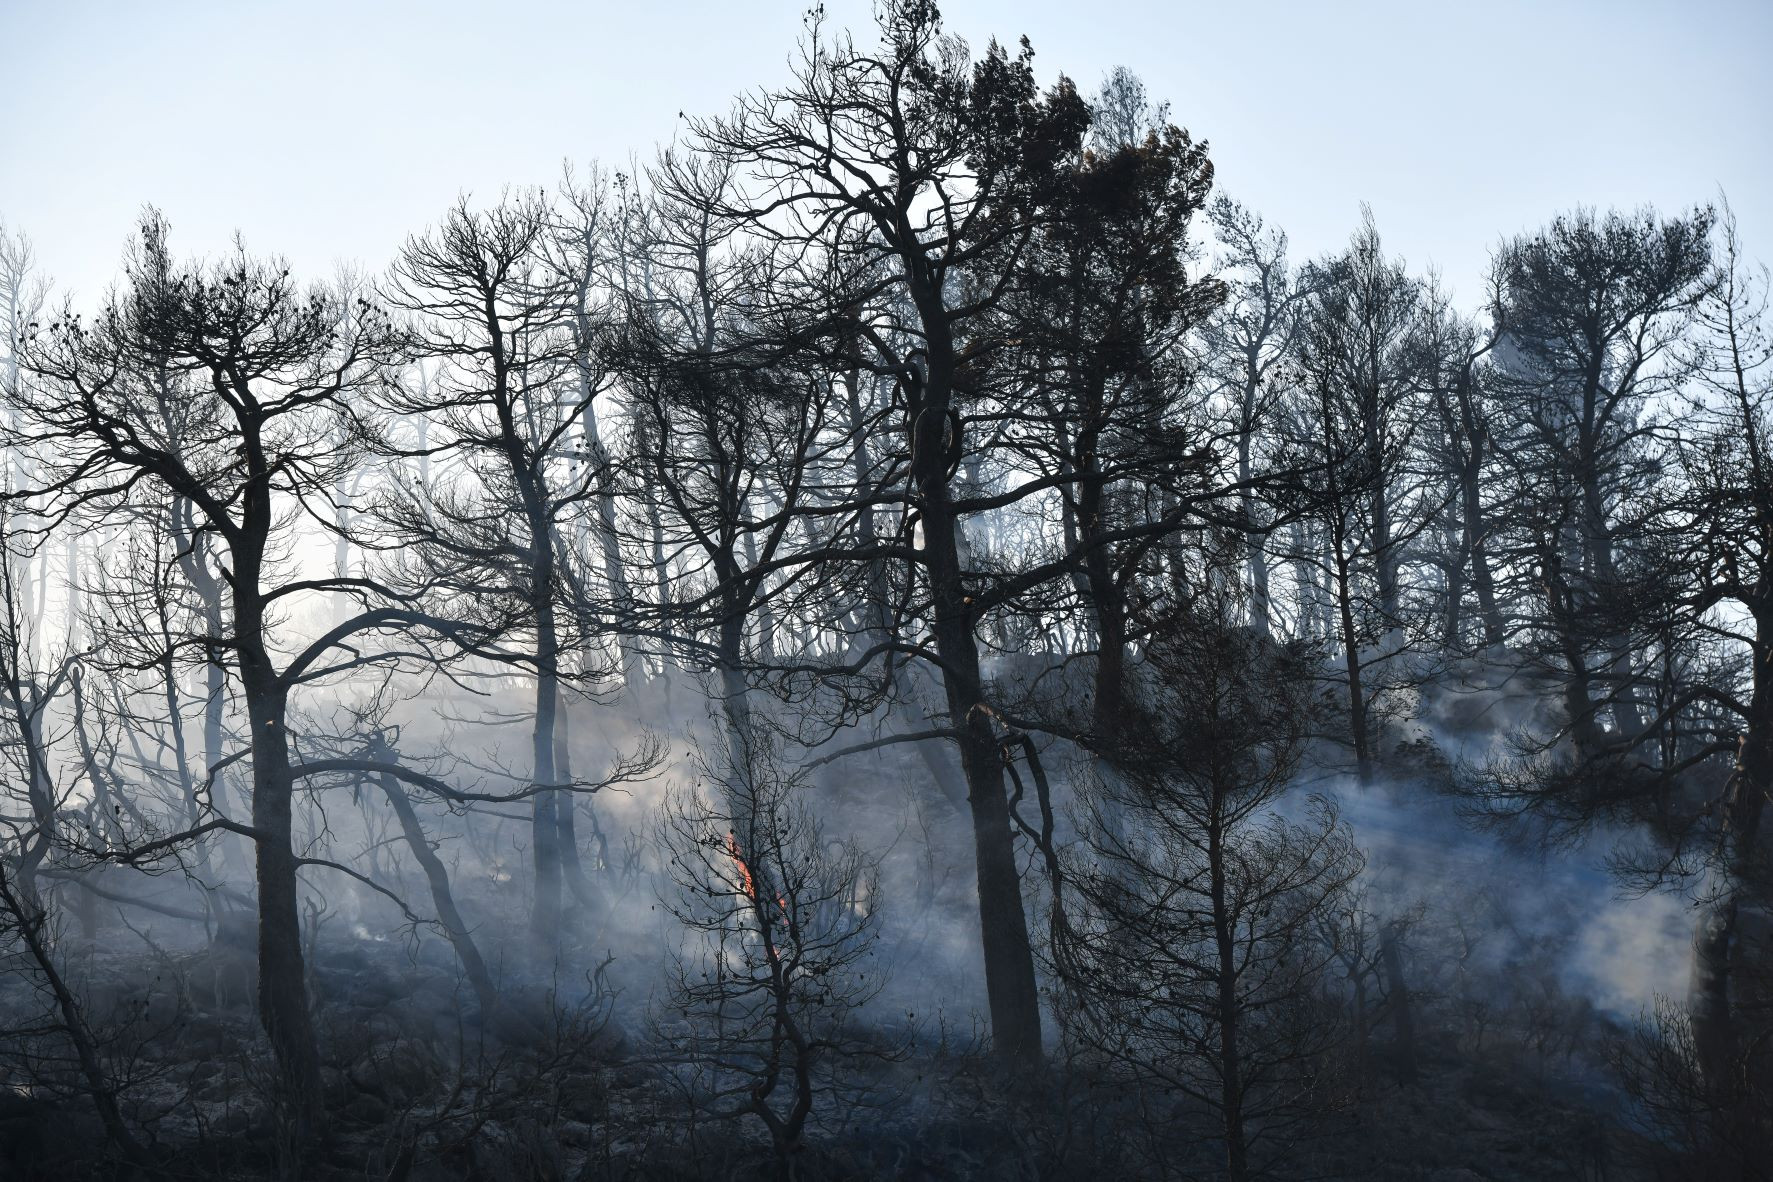 Σπύρογλου- Ινστιτούτο Δασικών Ερευνών: Φυσική αναγέννηση των καμένων εκτάσεων – Η Δασική Υπηρεσία πρέπει να αναλάβει πάλι τις πυρκαγιές